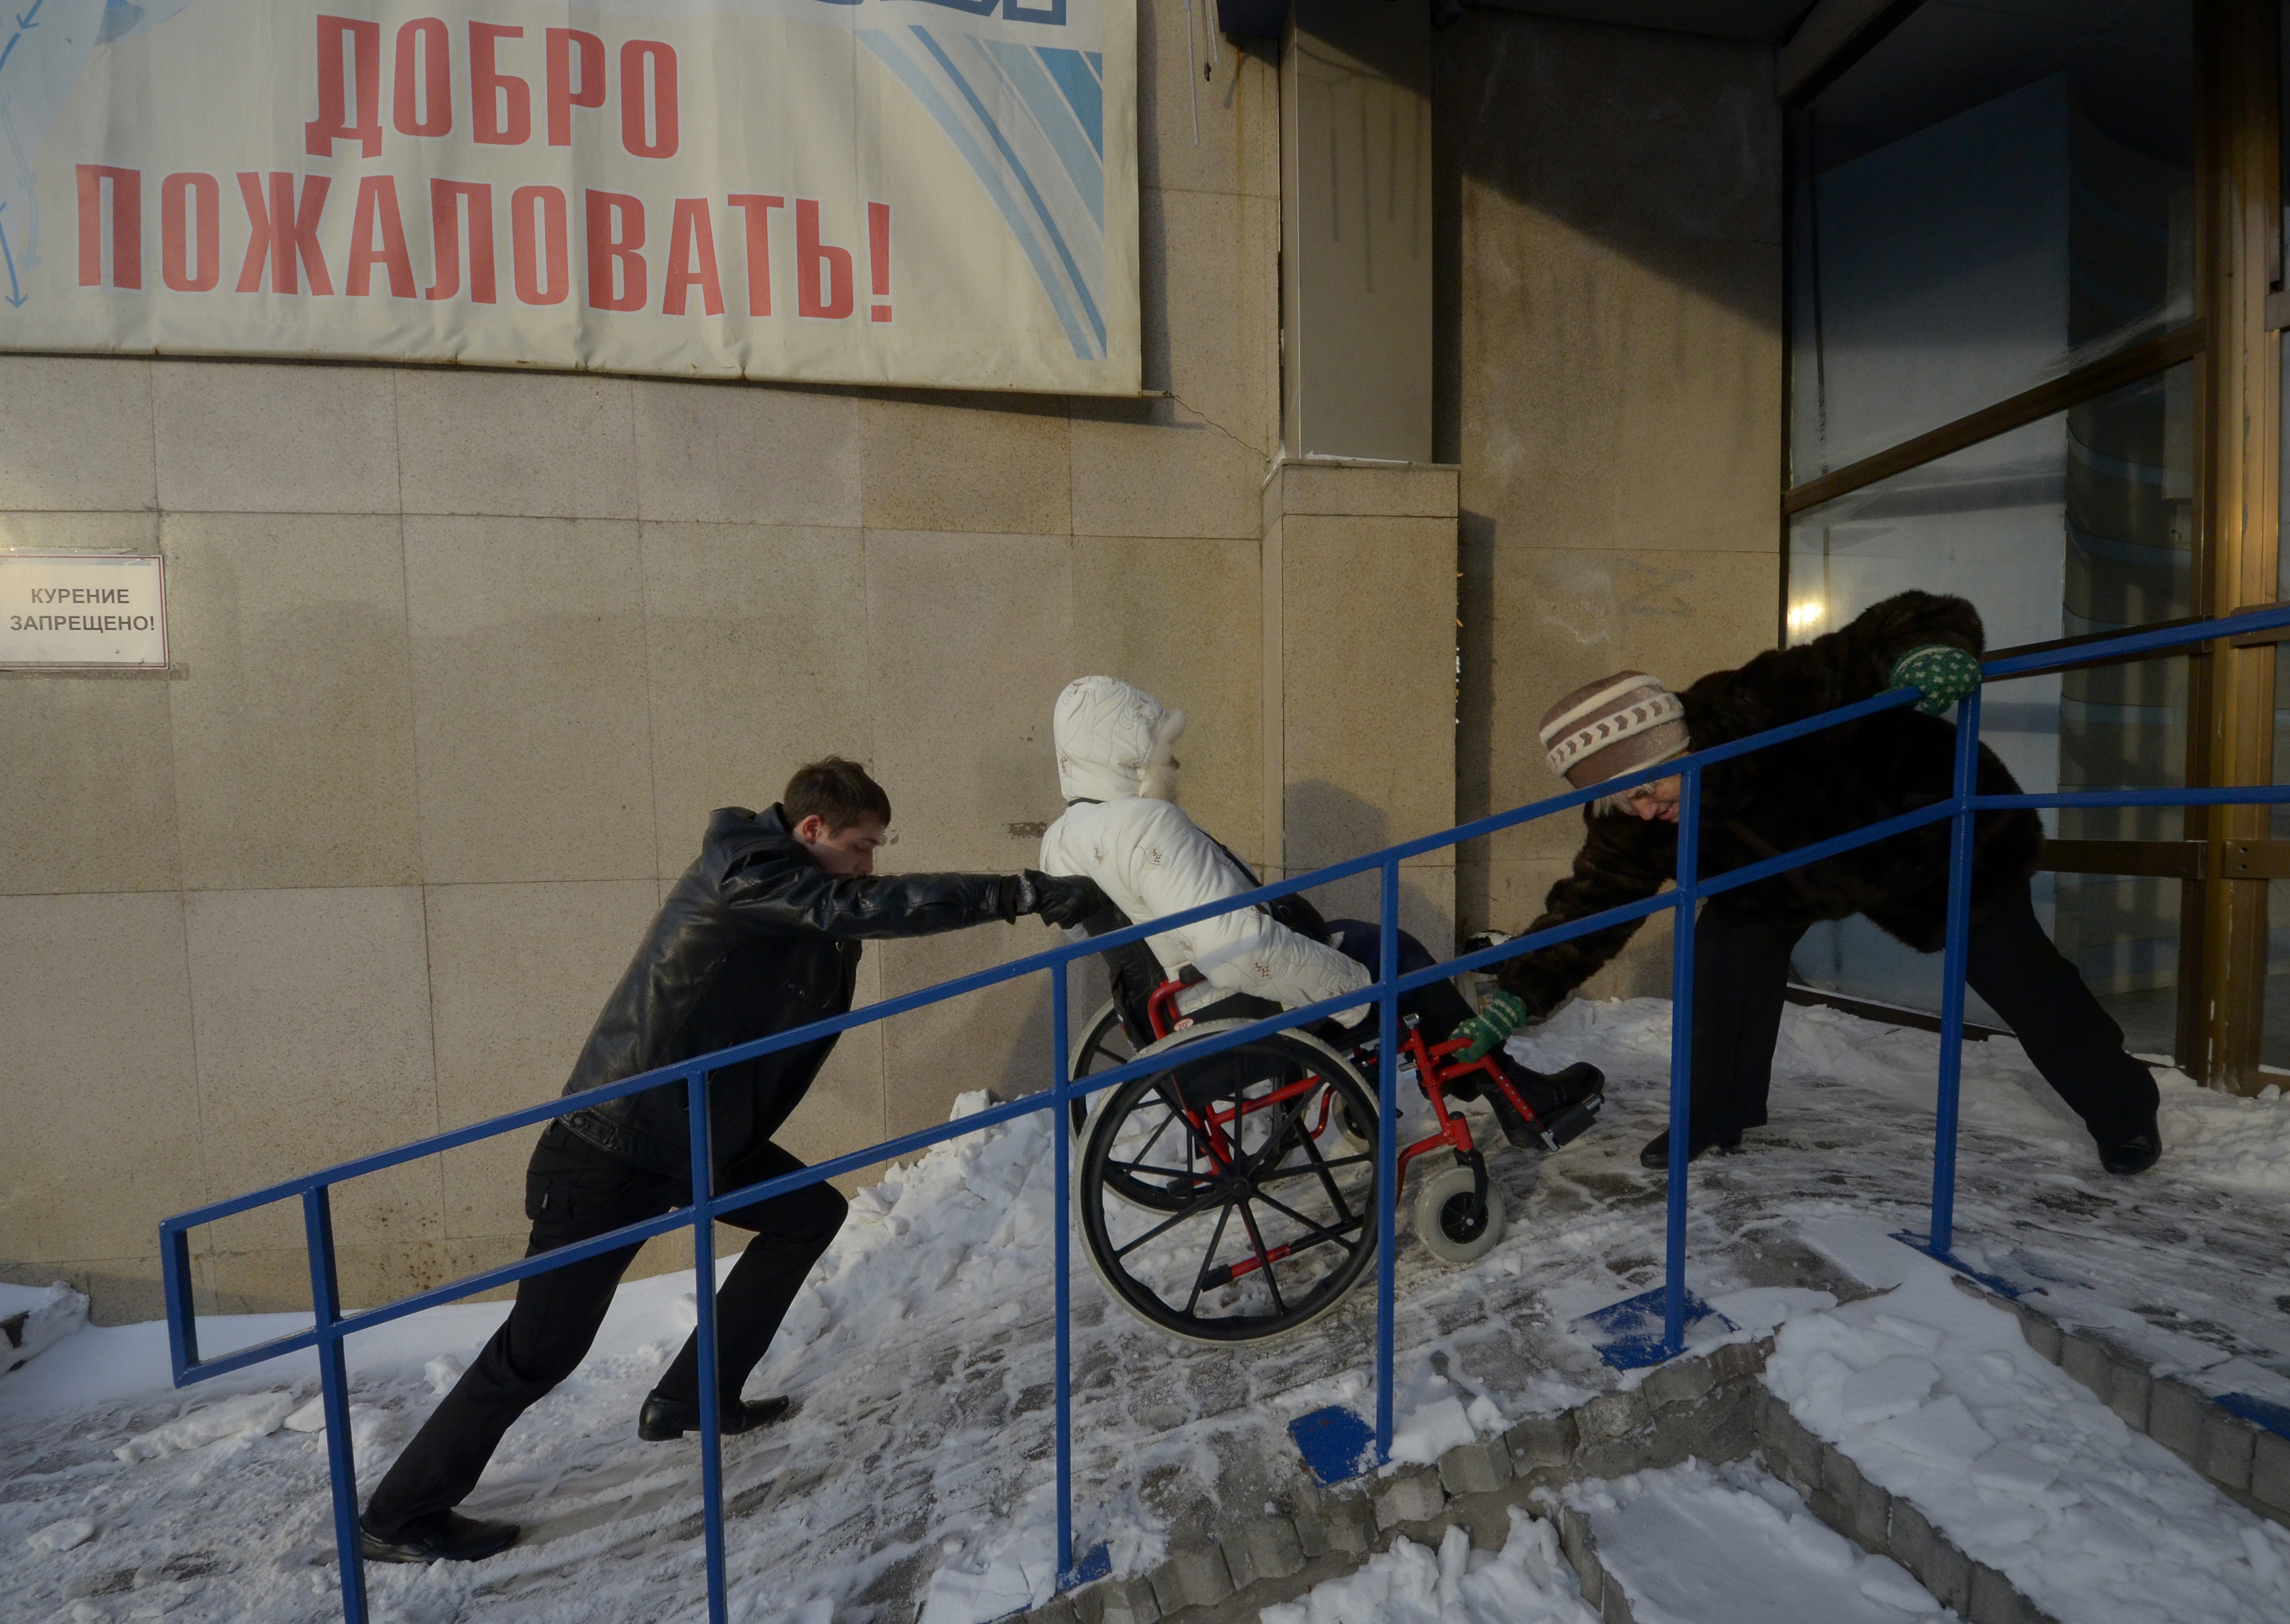 Неработающий инвалид с детства. Инвалиды в России. Недоступность для инвалидов. Дети инвалиды. Недоступная среда для инвалидов.